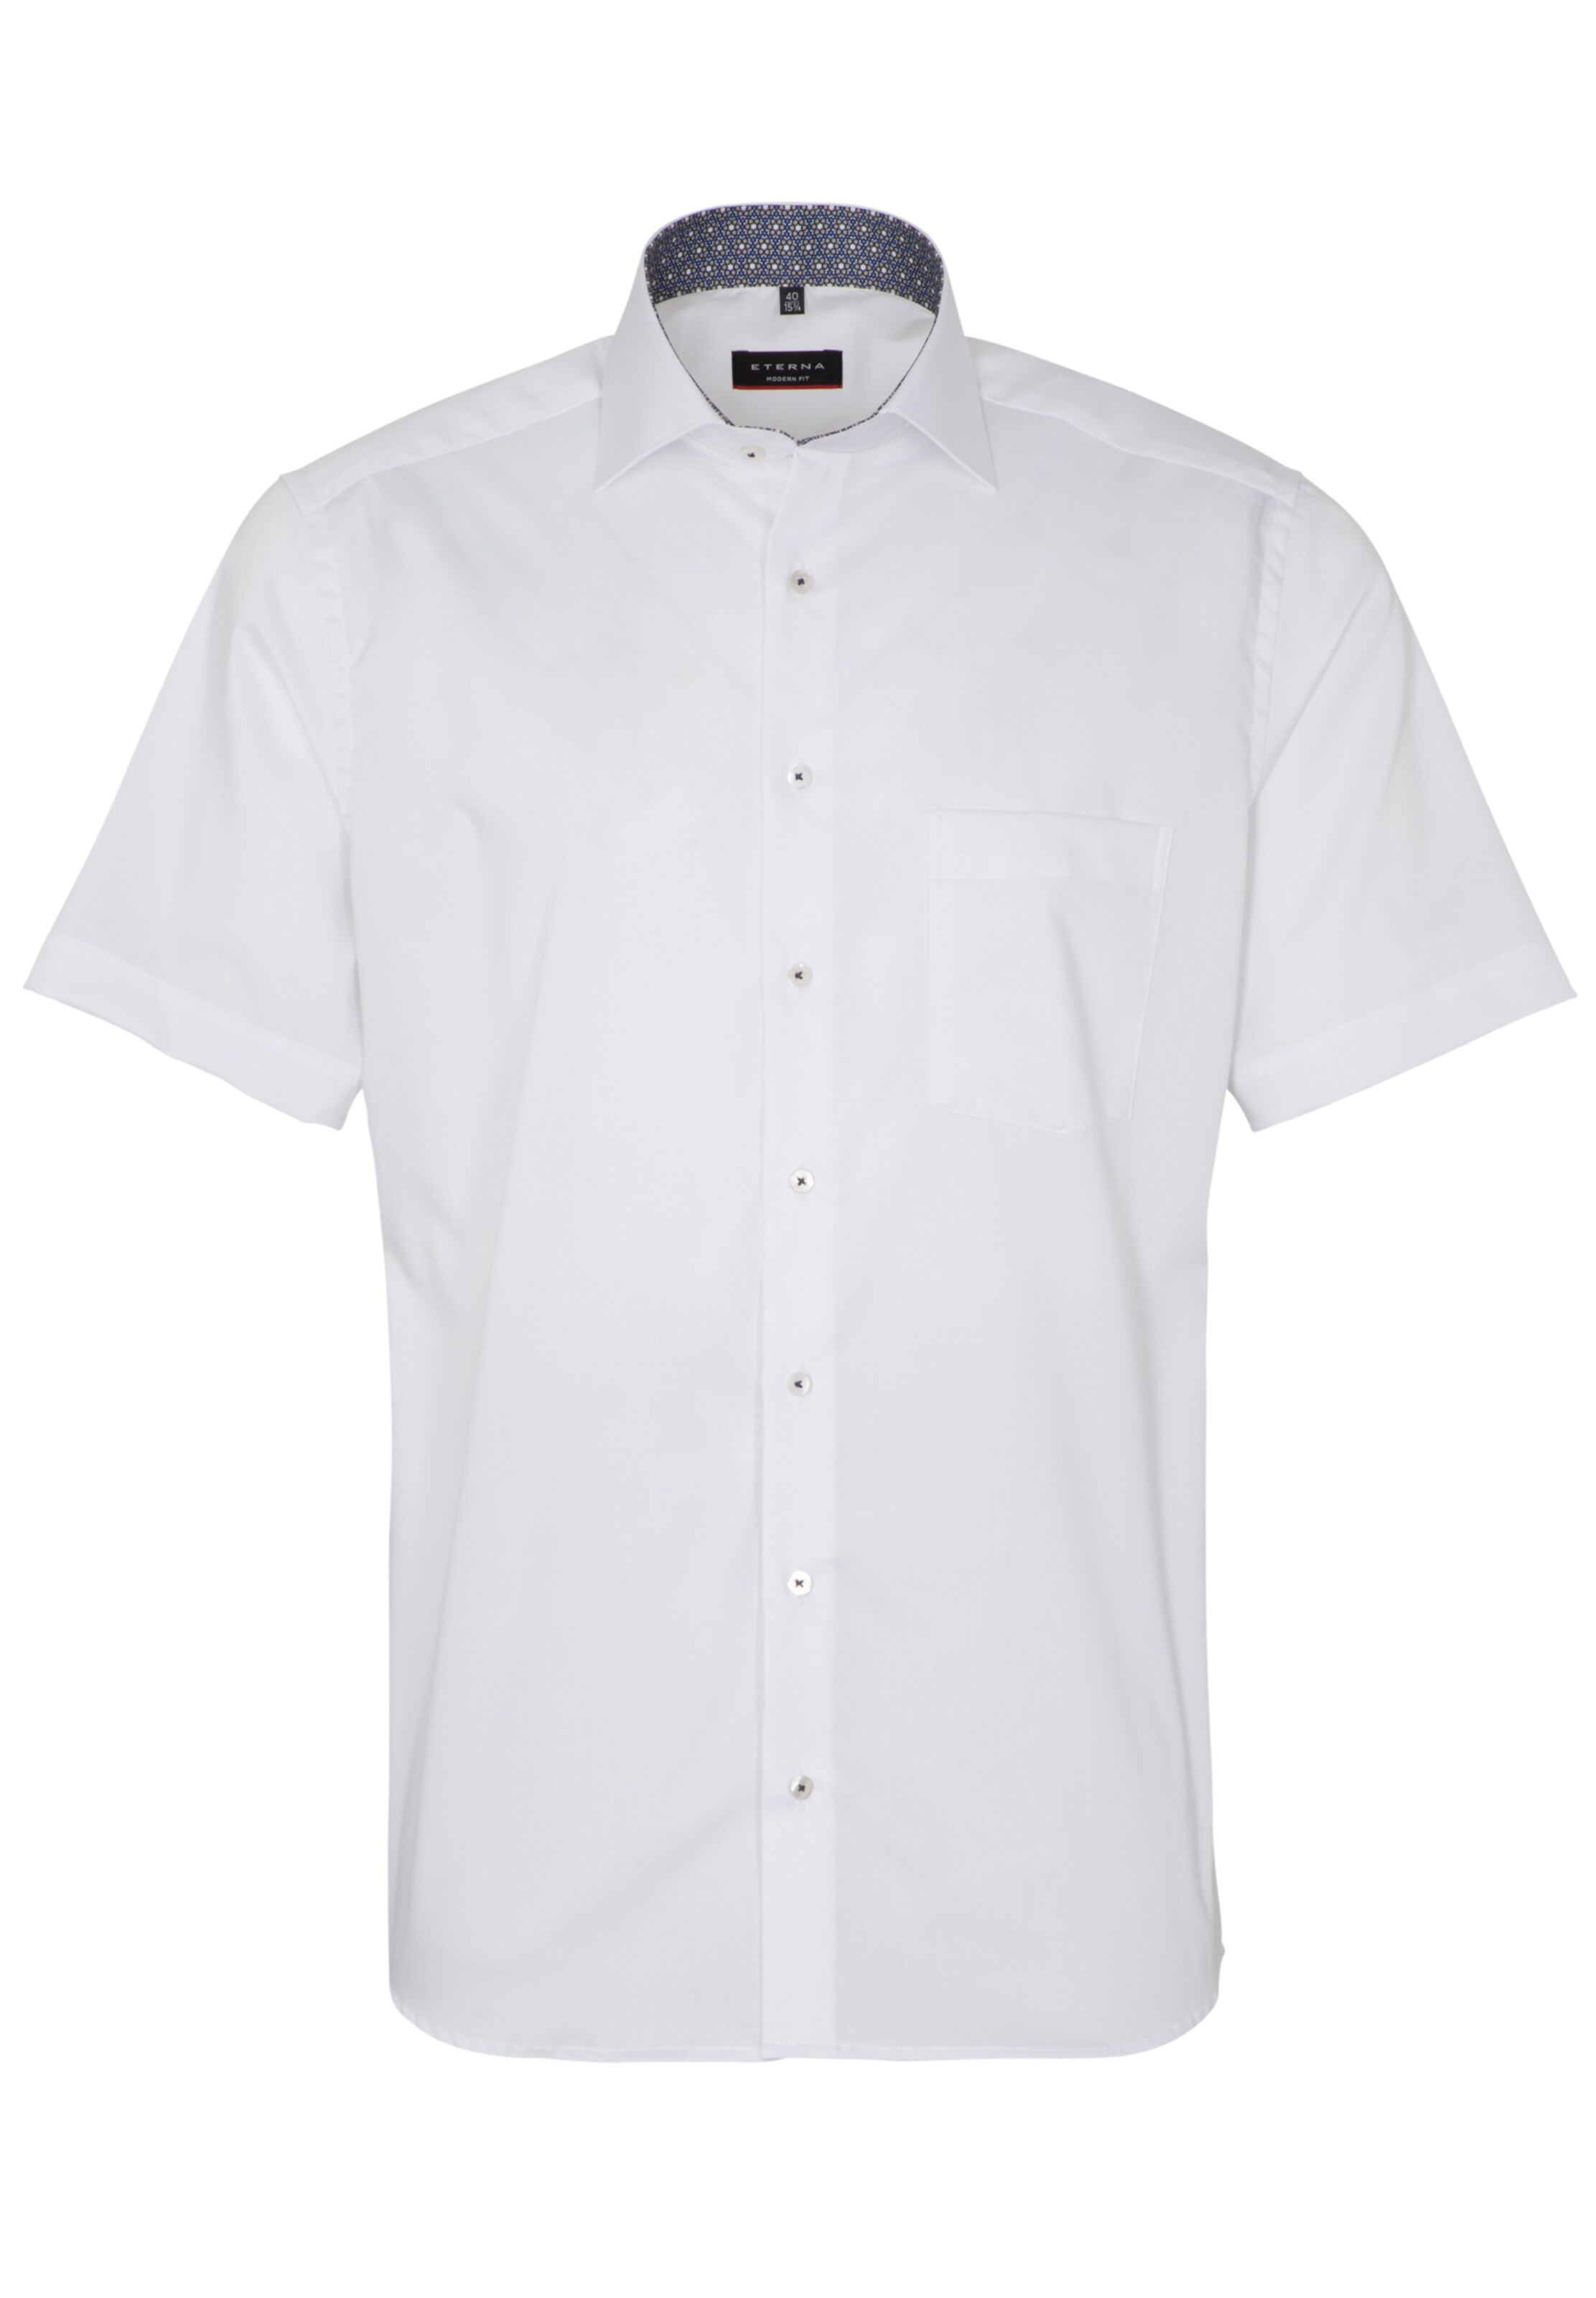 Männer Große Größen ETERNA Hemd in Weiß - QM01458